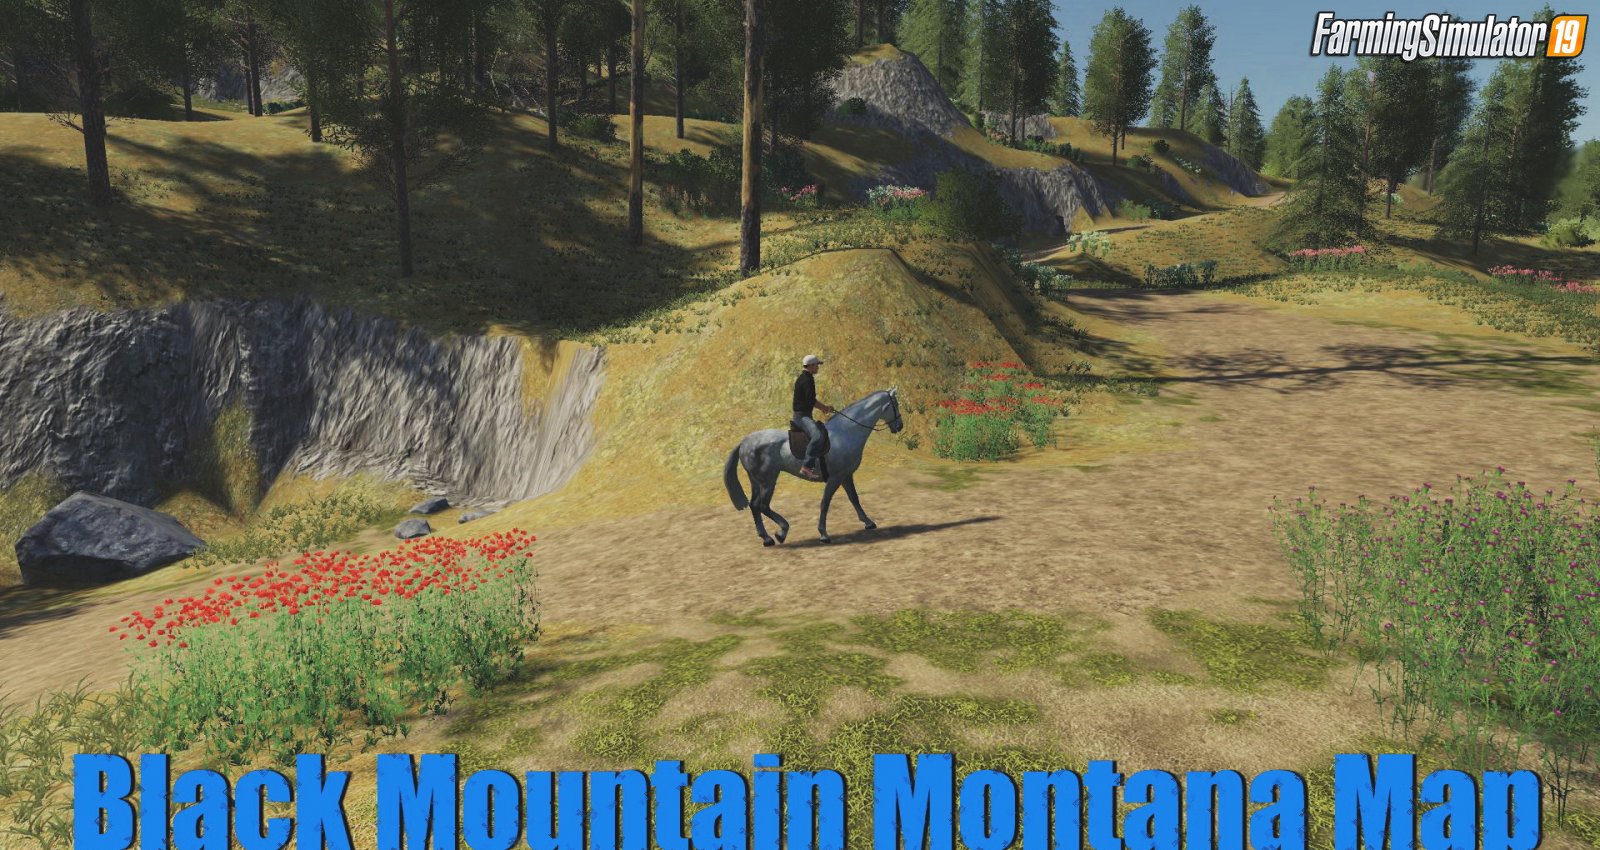 Black Mountain Montana Map v1.0 for FS19